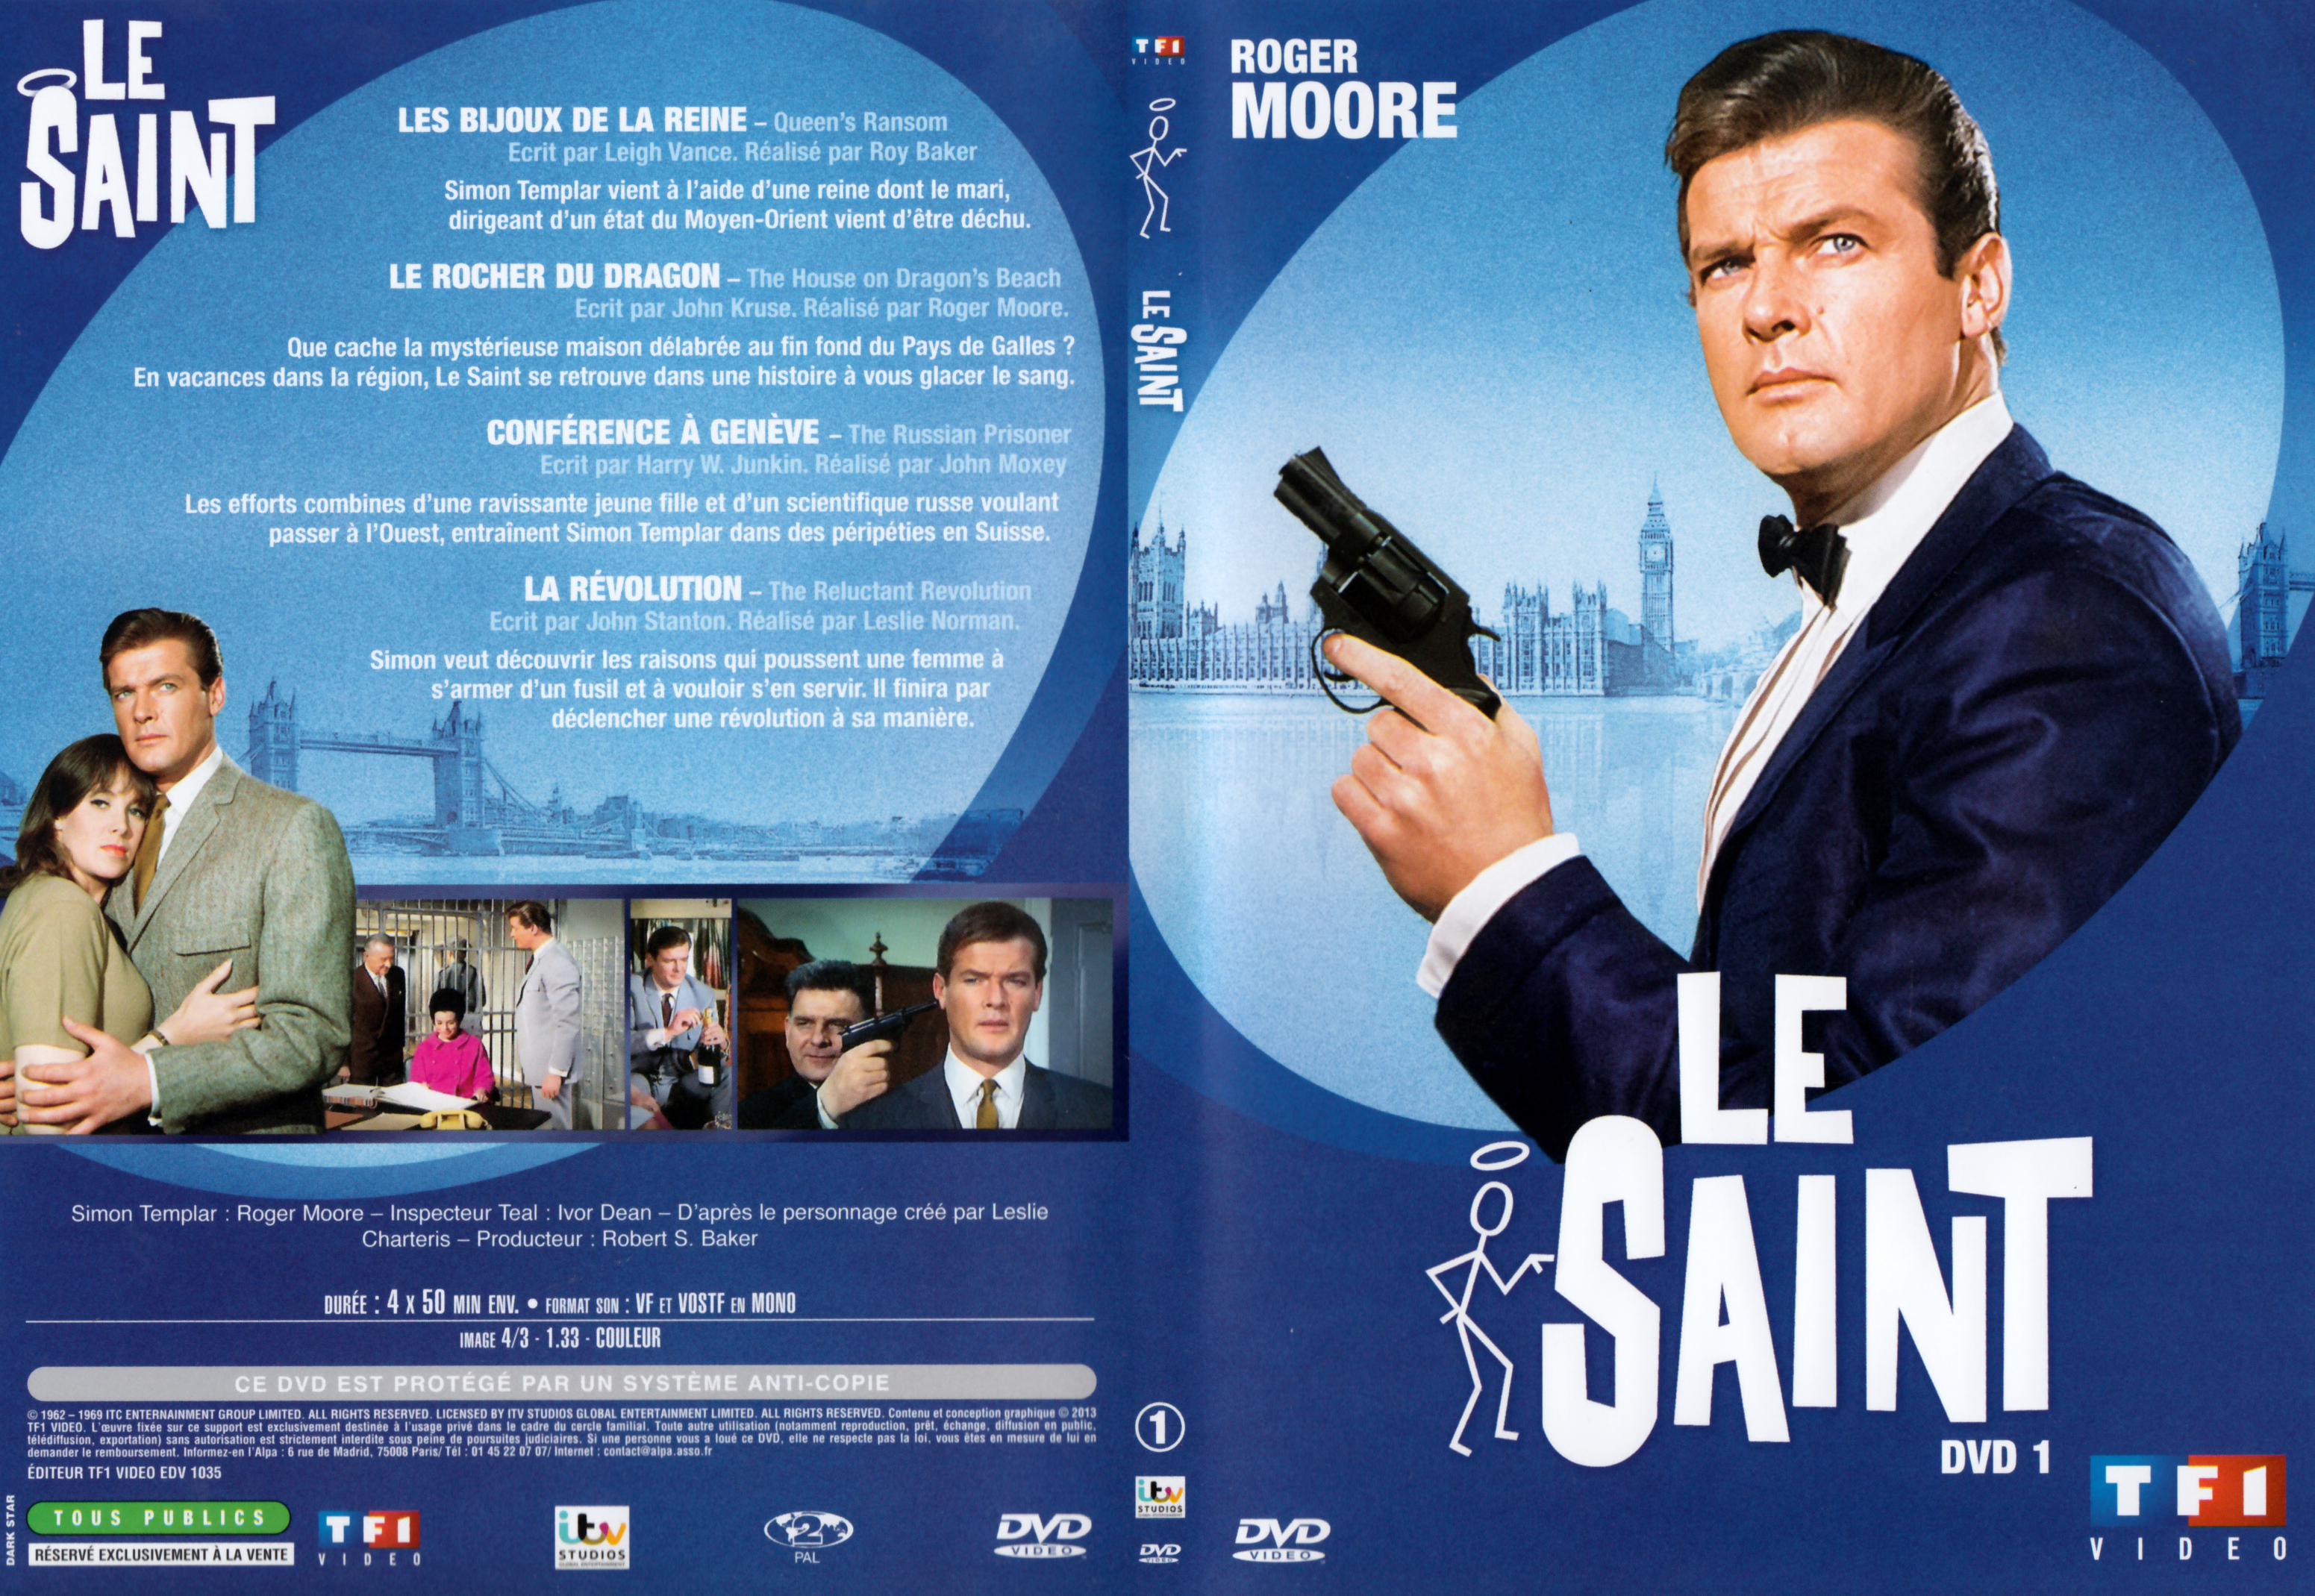 Jaquette DVD Le saint Saison 4 DVD 1